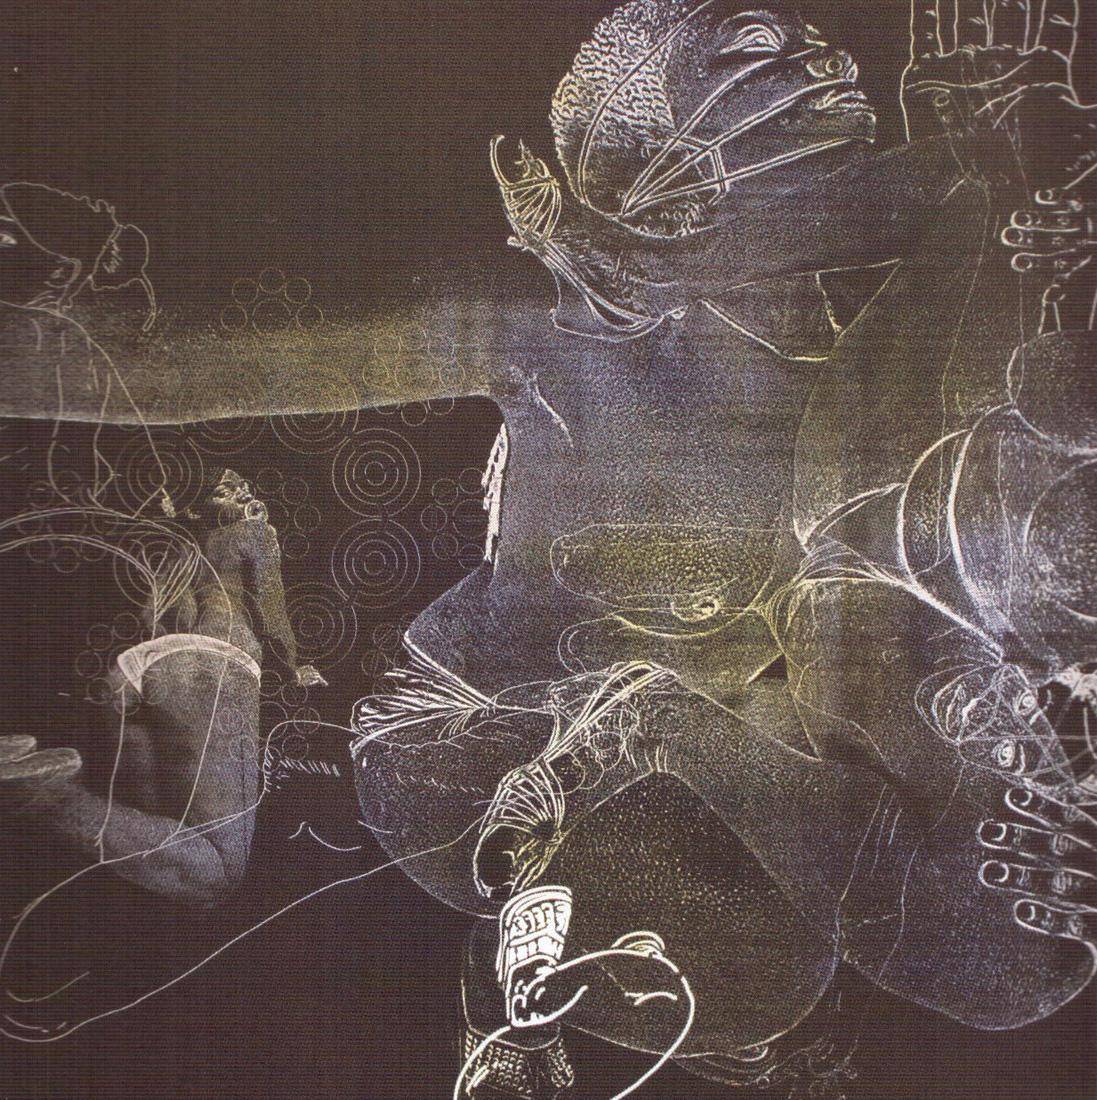 Alma libre, 2010. Luis Ricaurte (1964). Serigrafía sobre papel.  54 x 48,5 cm. Nº inv. 5154.